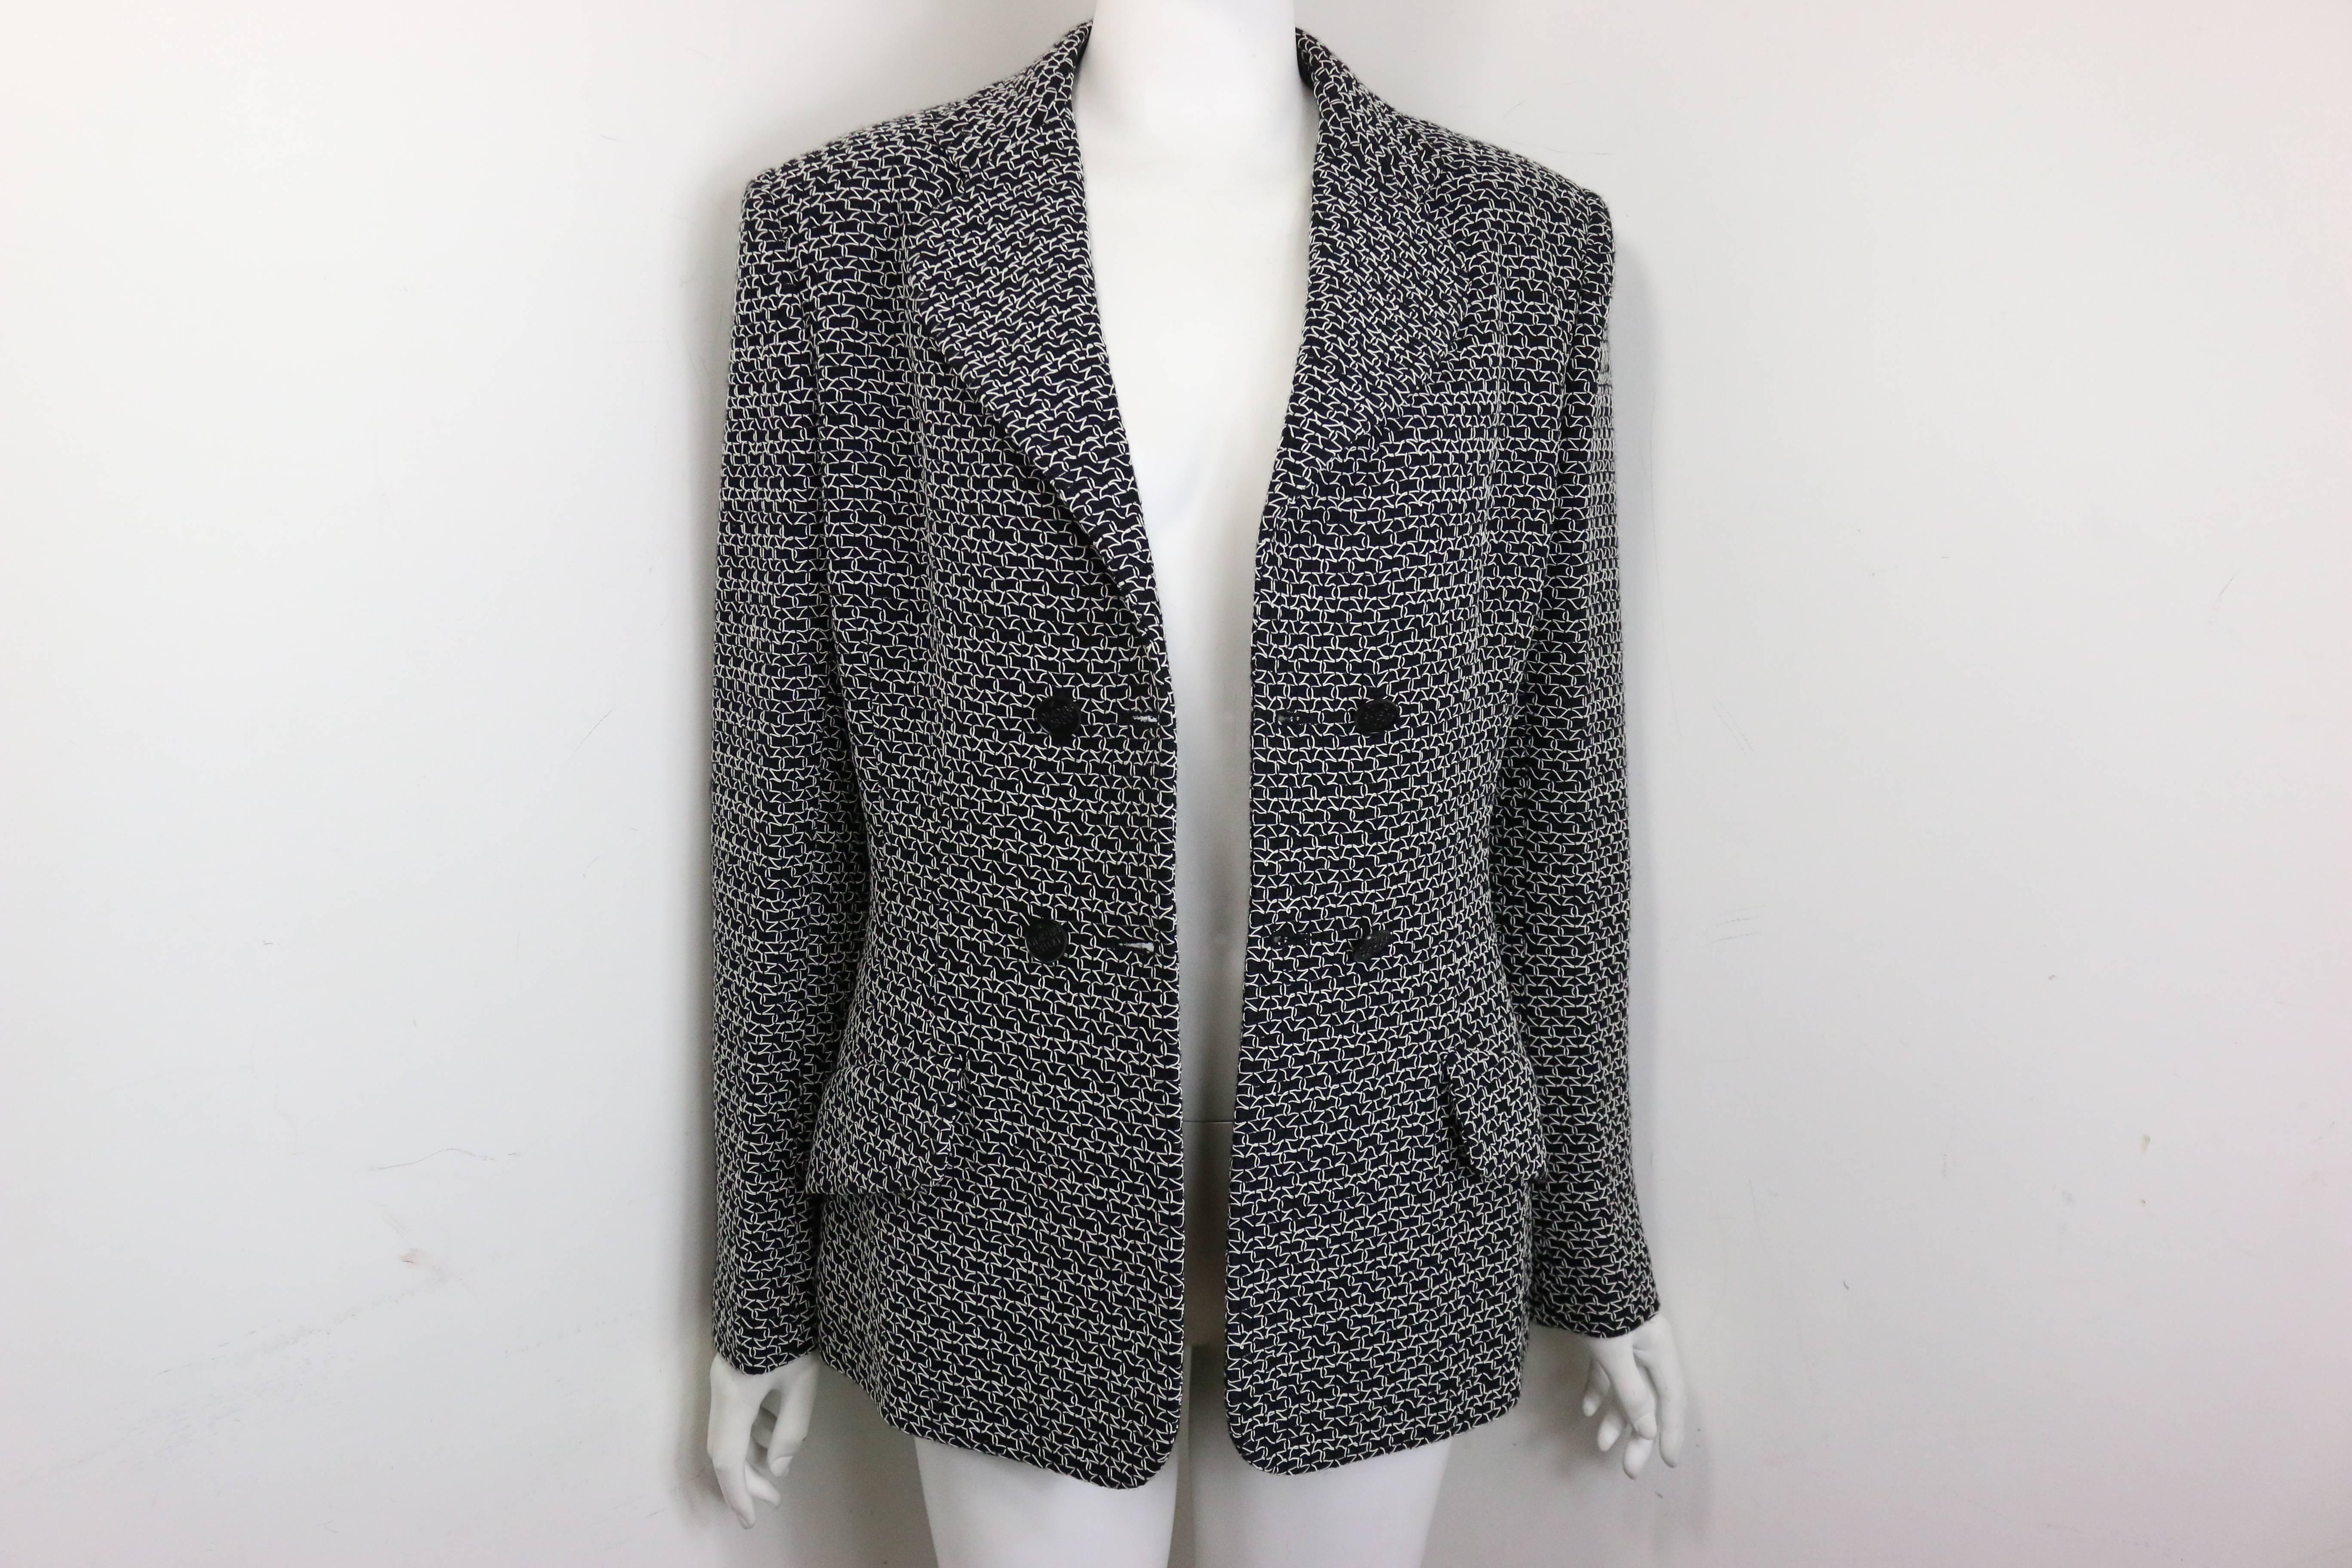 - Vintage Chanel veste double boutonnage en laine tweed noire avec filet tricoté blanc de l'année 1998 pré collection. Il est doté d'une double boutonnière noire 